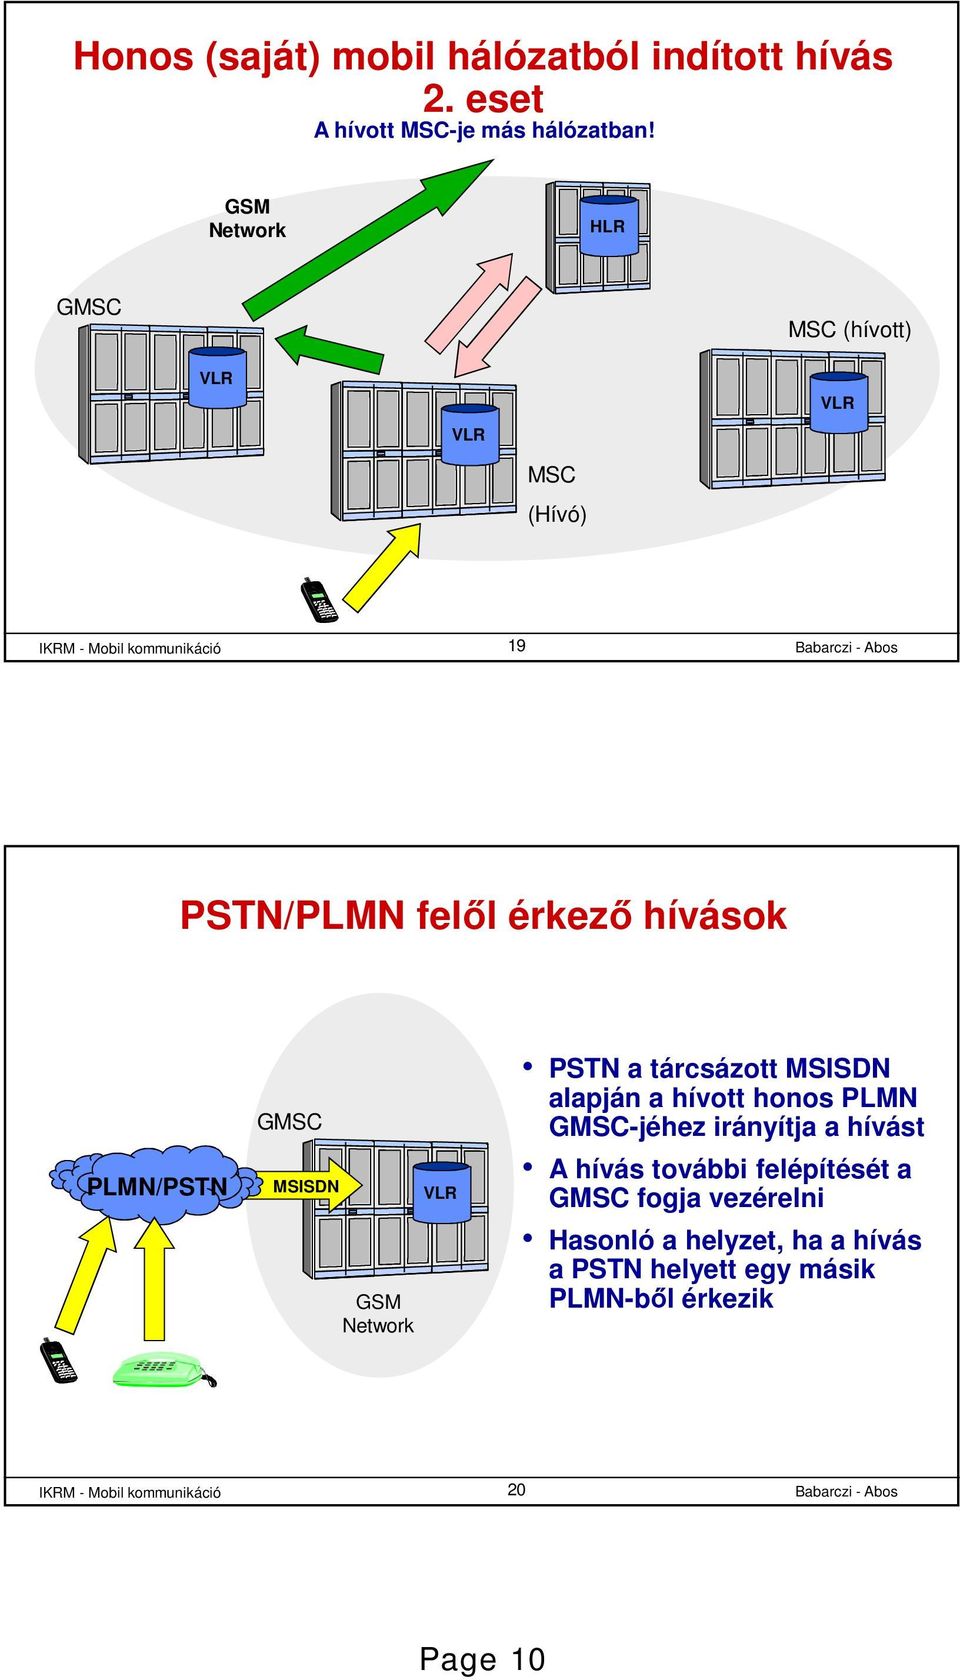 GSM Network PSTN a tárcsázott MSISDN alapján a hívott honos PLMN GMSC-jéhez irányítja a hívást A hívás